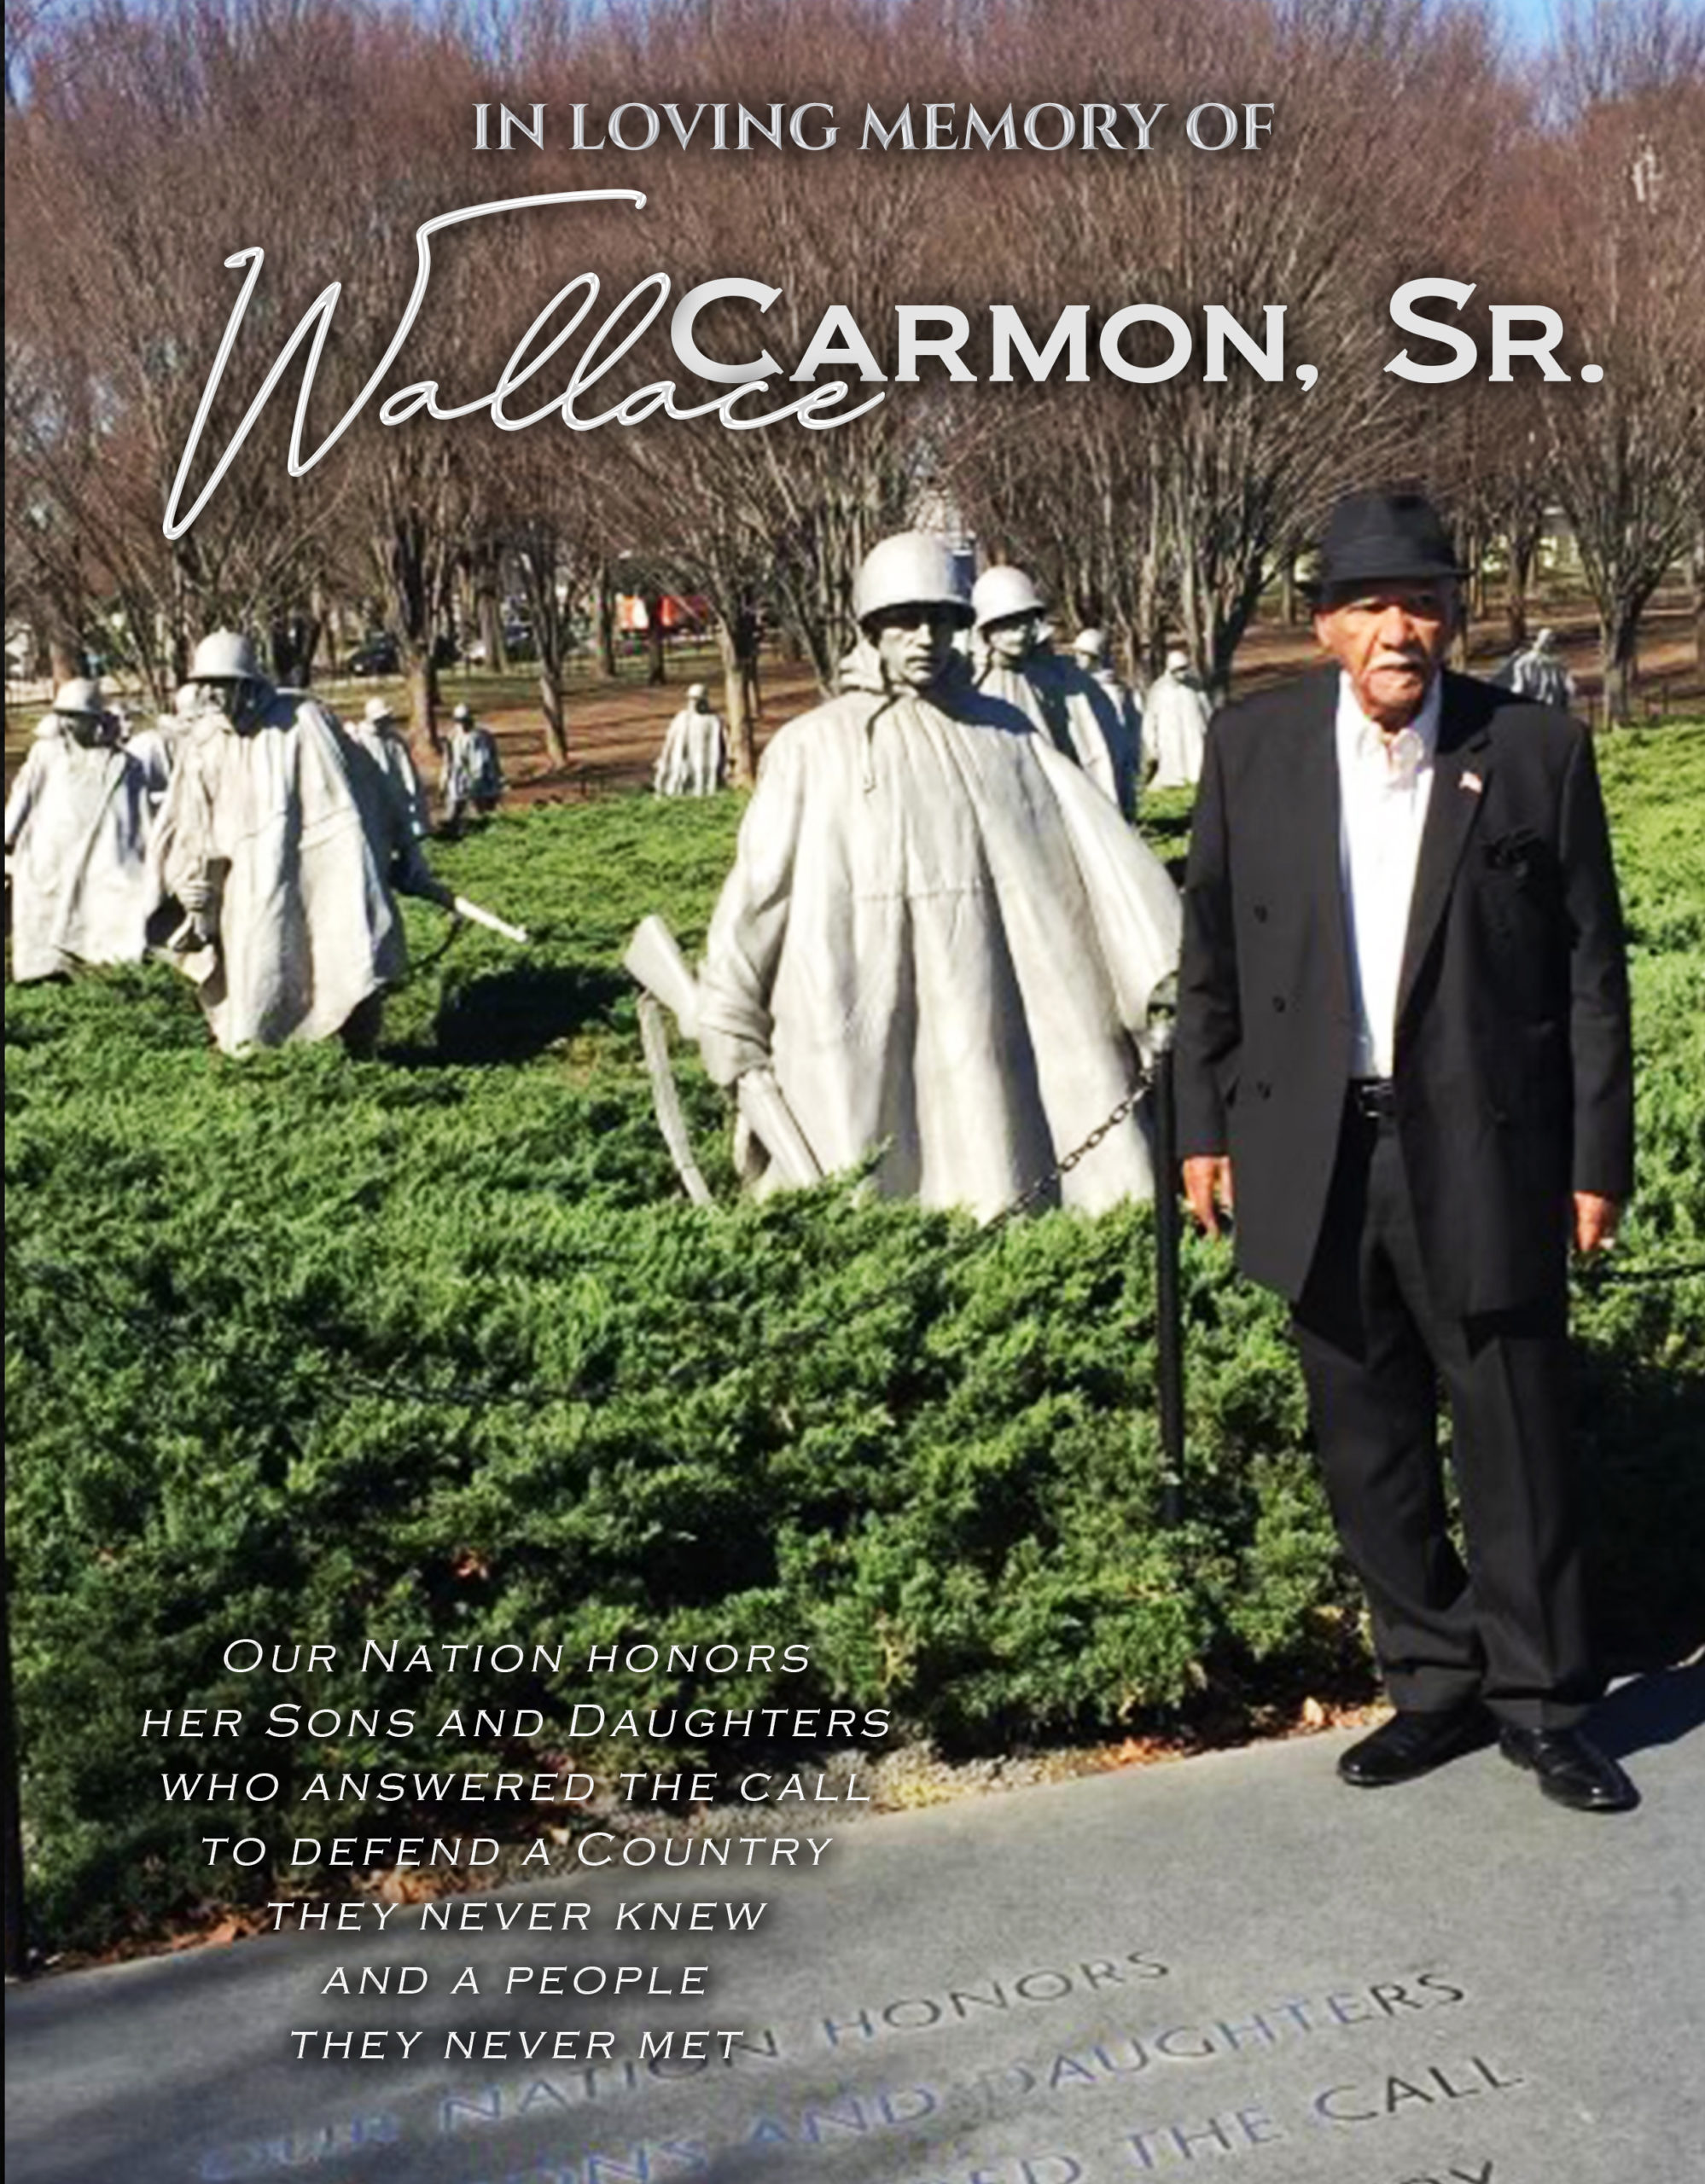 Wallace Carmon Sr 1930-2021